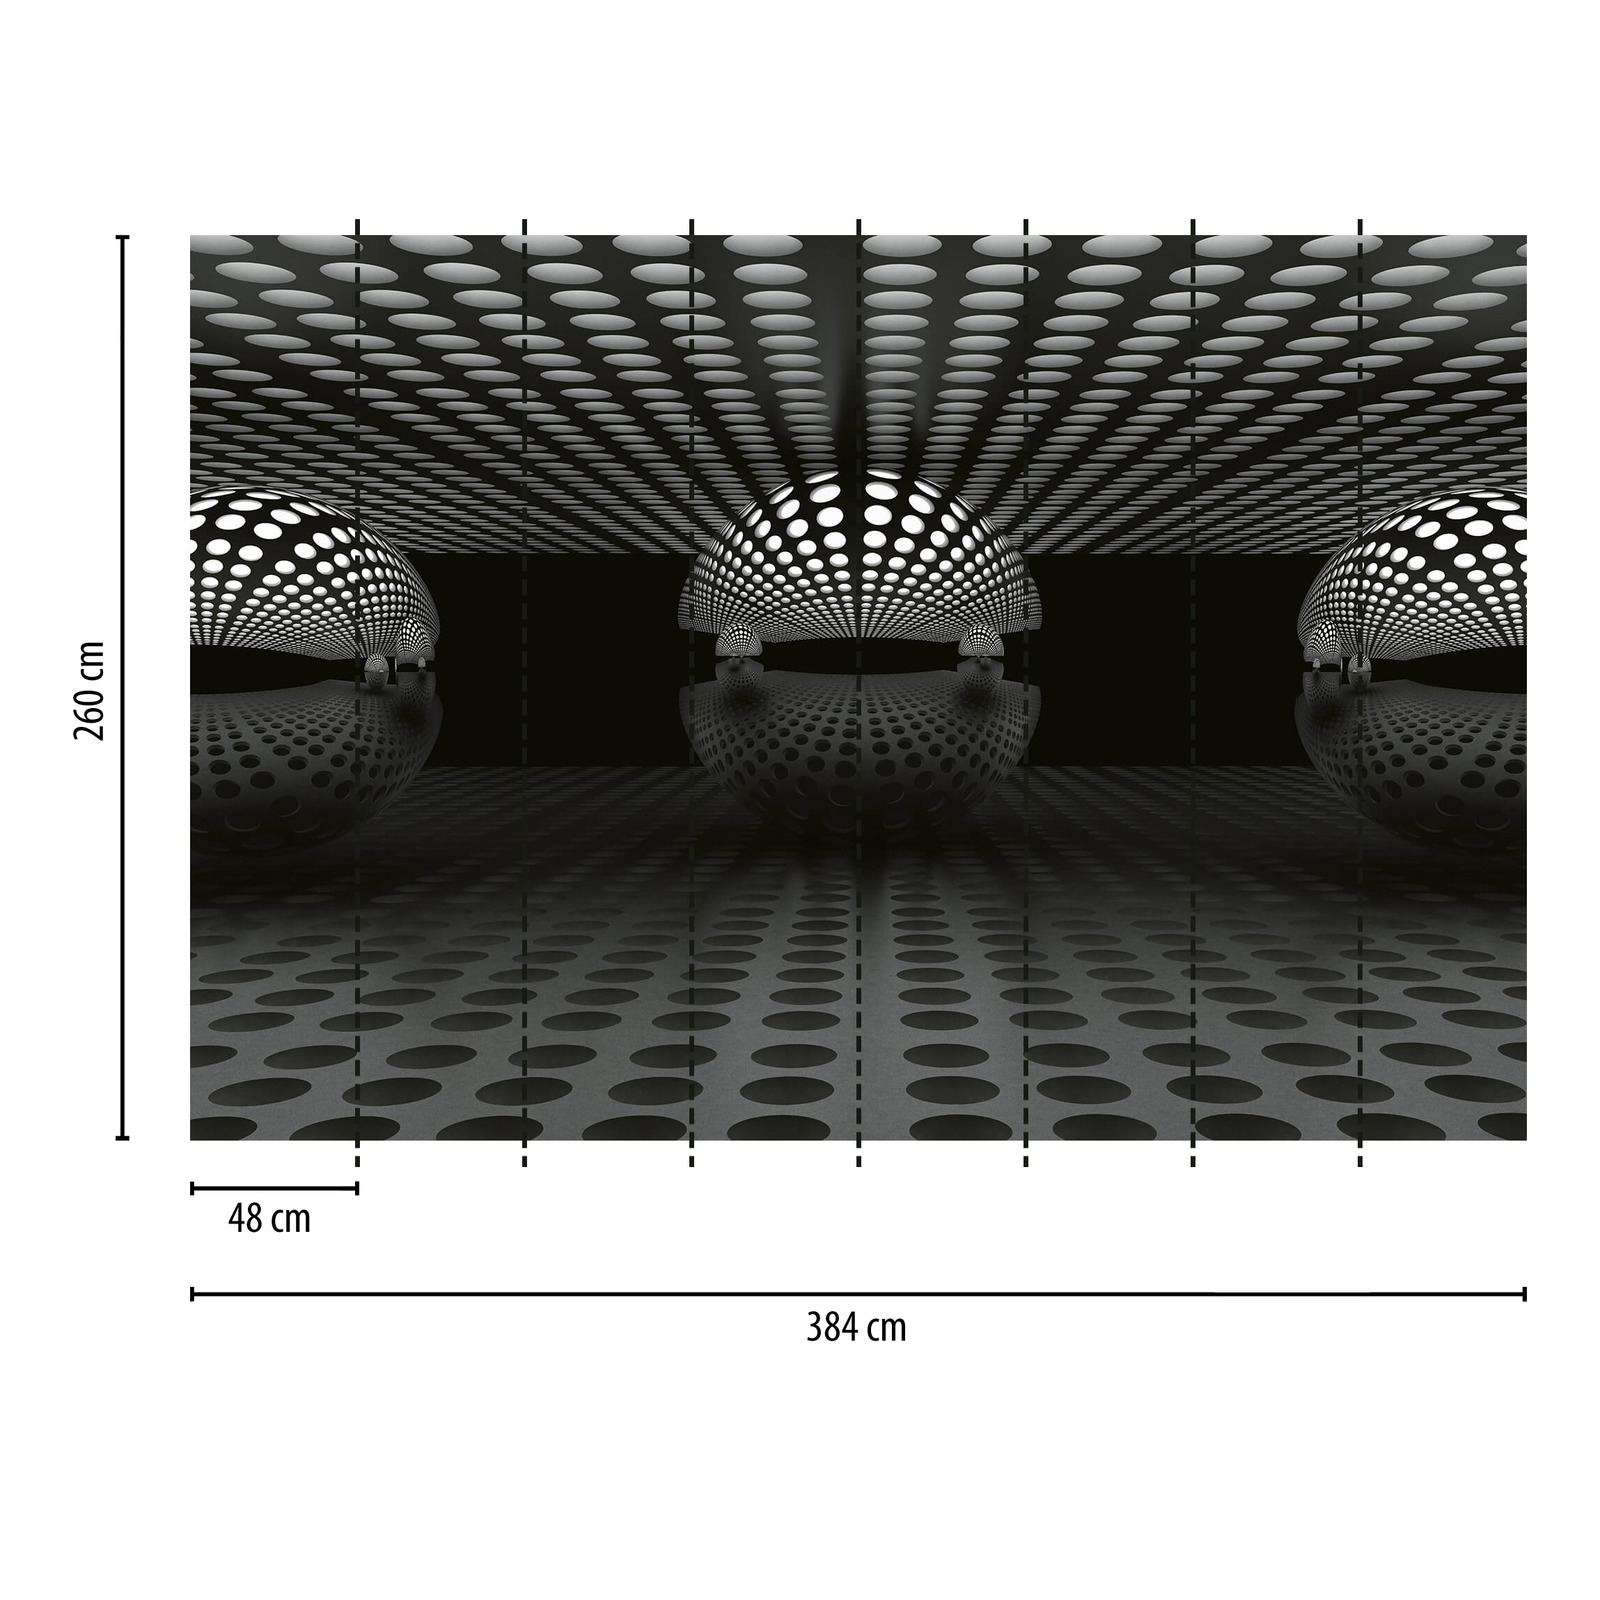             Photo wallpaper geometric 3D pattern - black, white
        